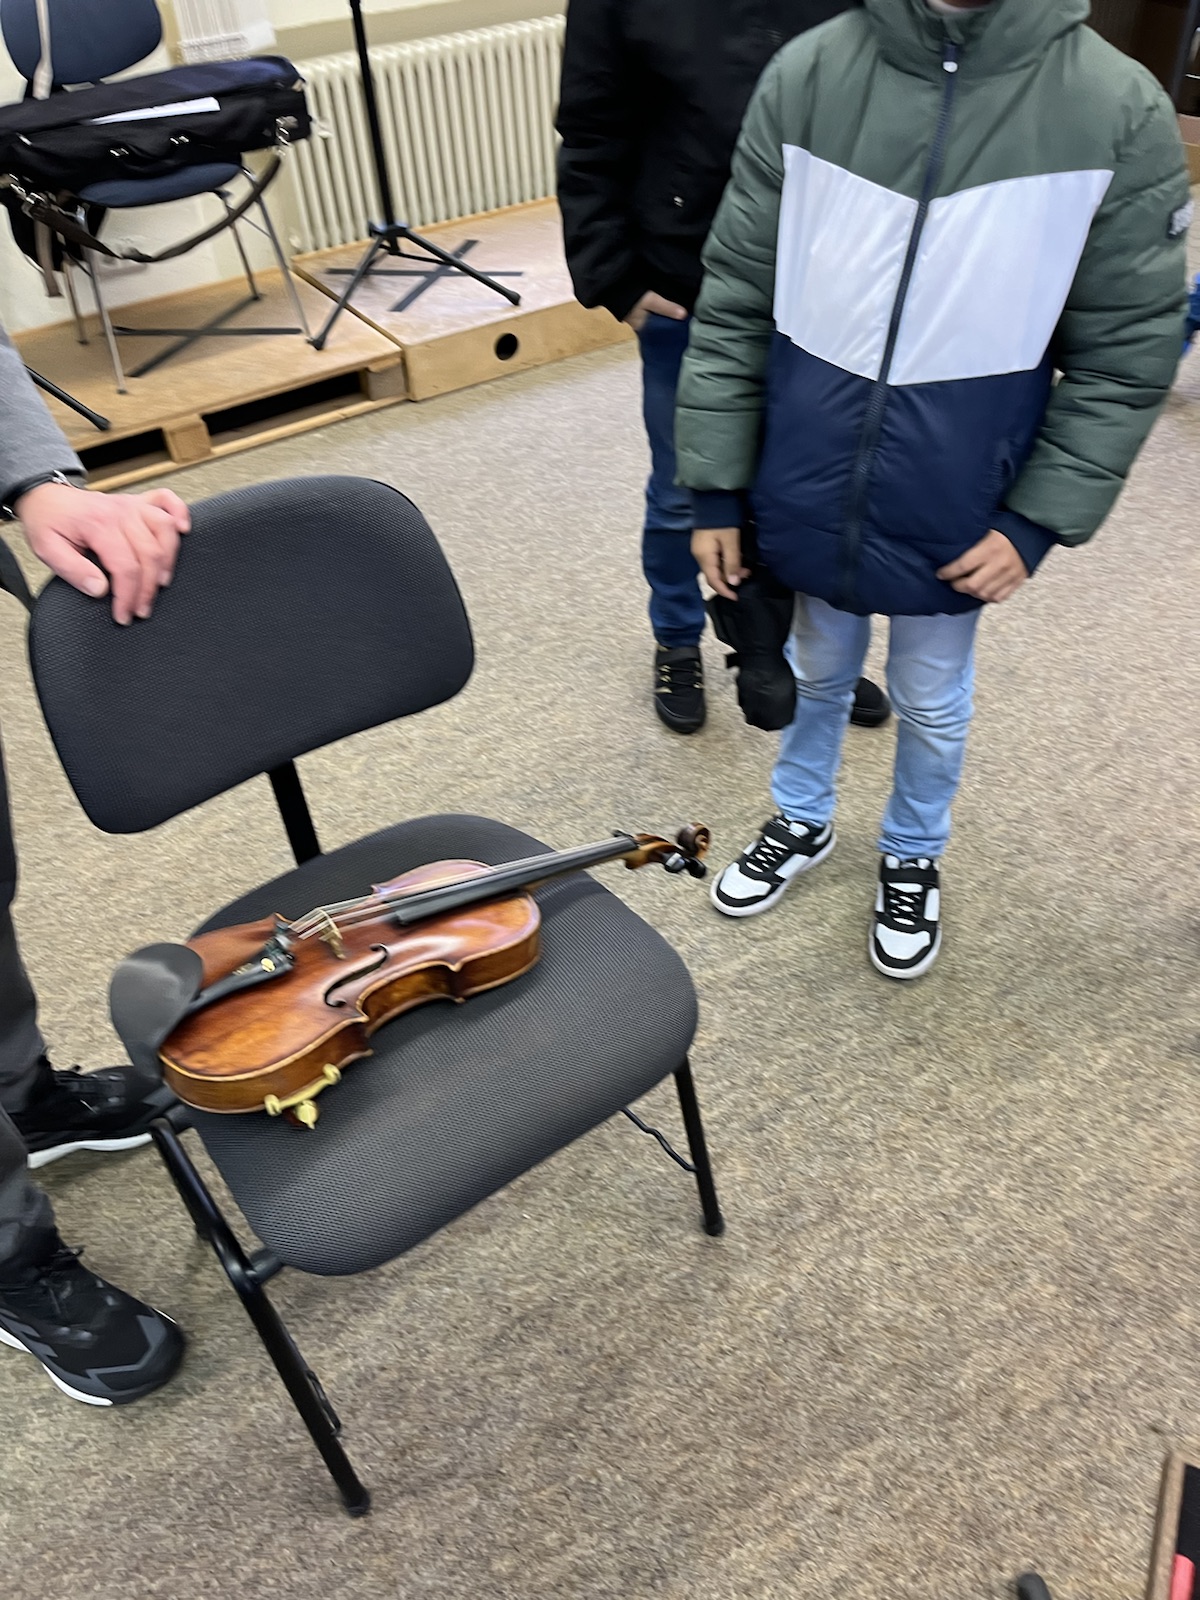 Man sieht eine Geige auf einem Stuhl liegen